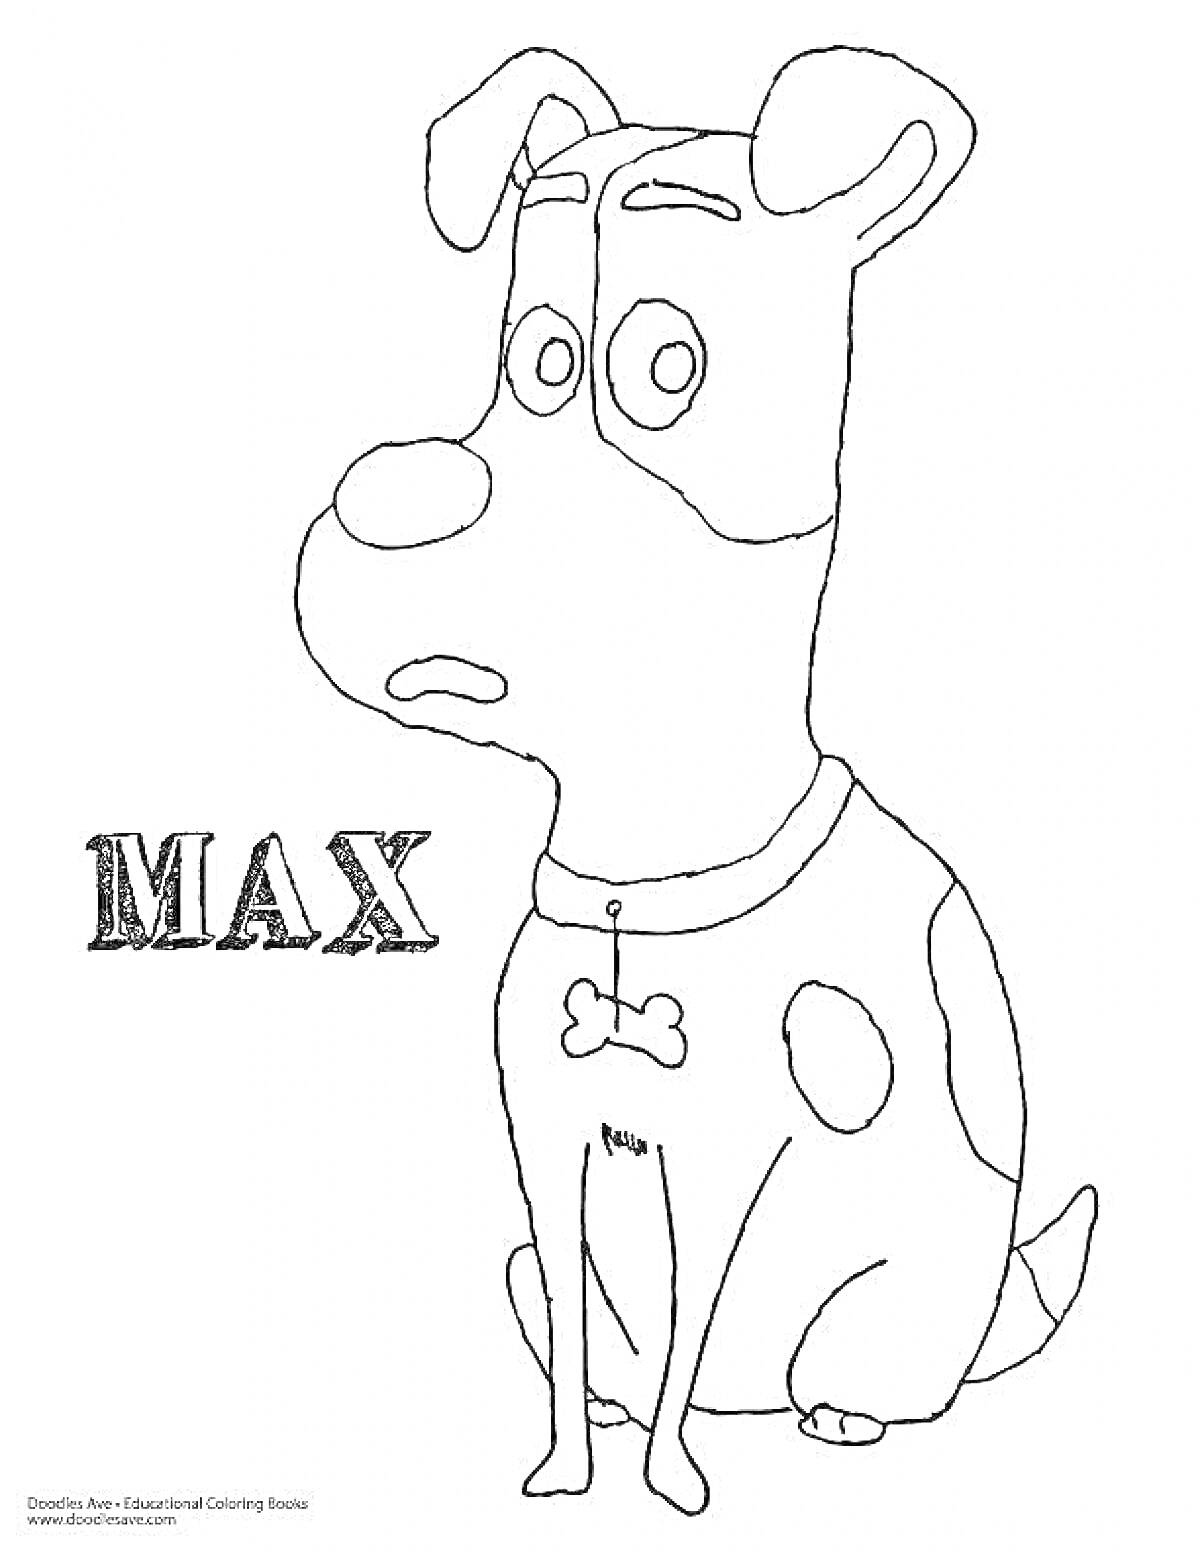 Раскраска Макс, сидящая собака с ошейником и текстом 